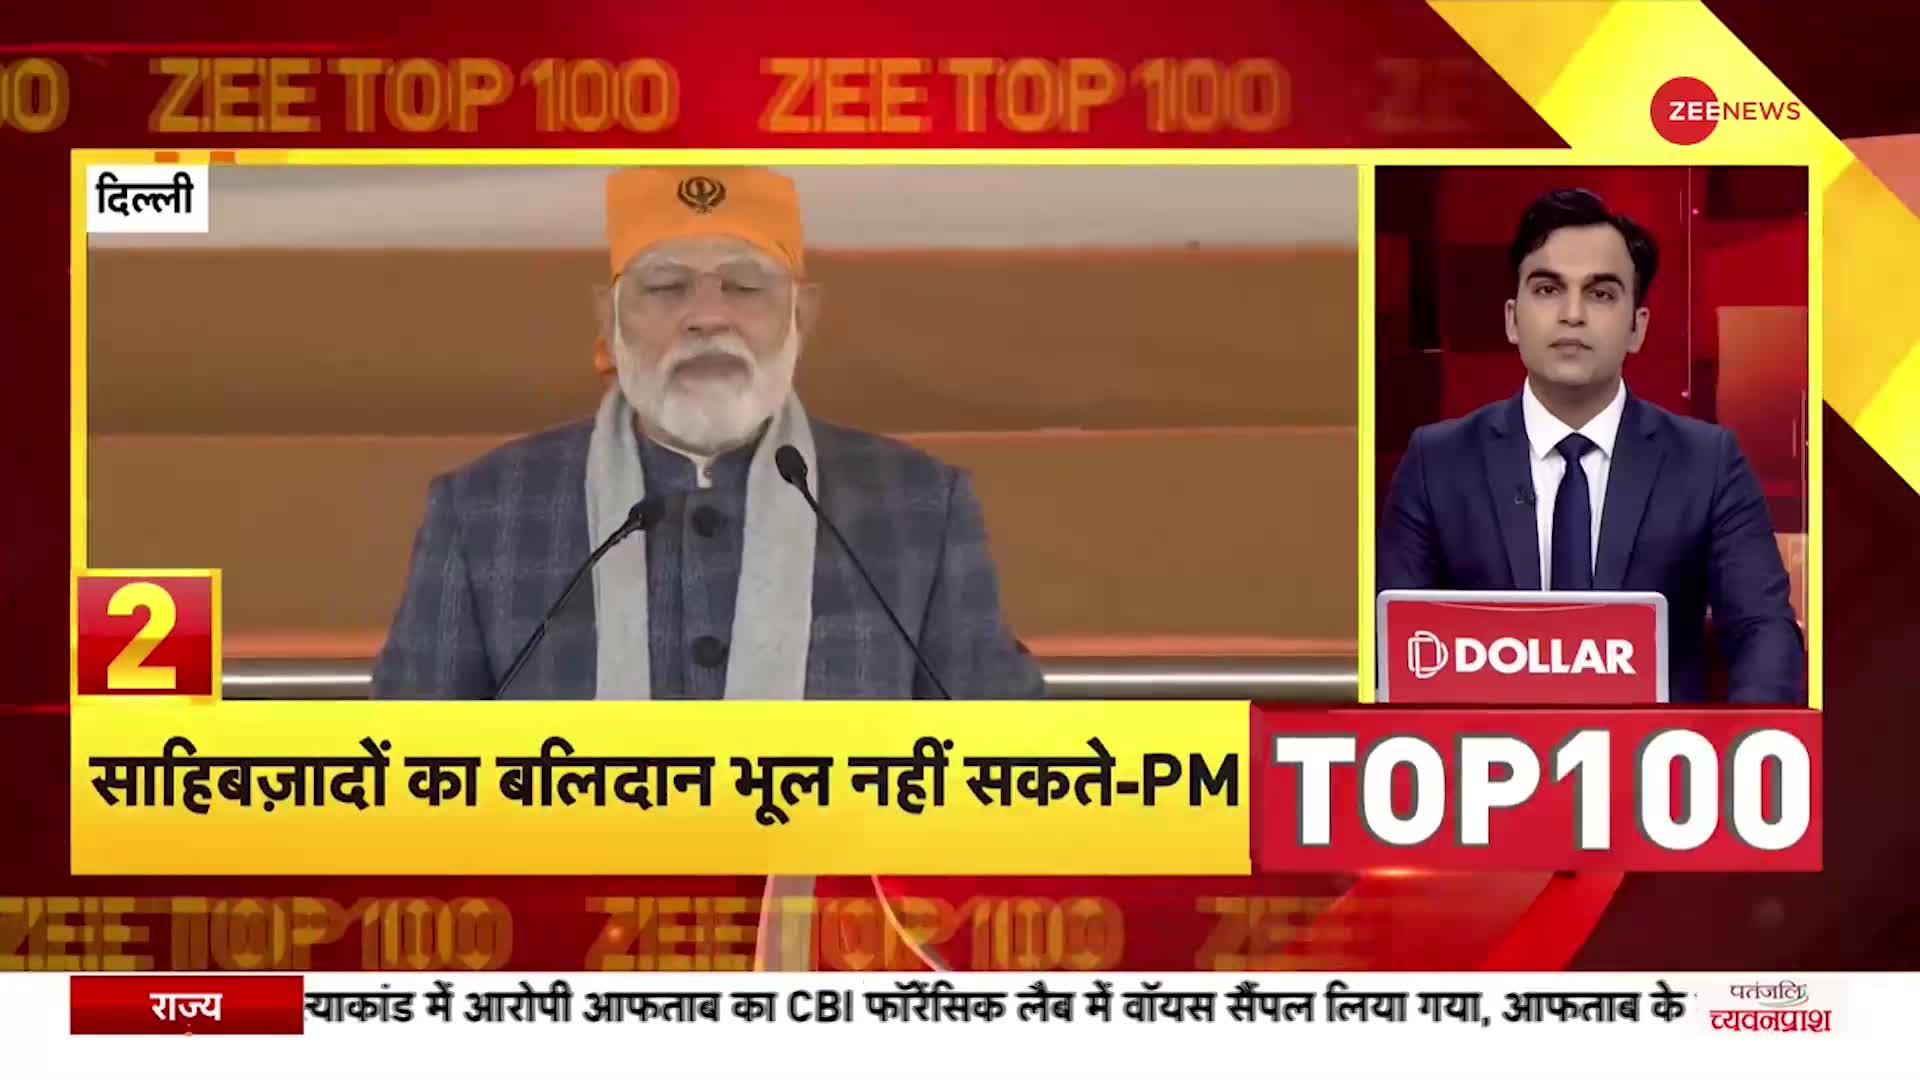 Zee TOP 100: Veer Bal Diwas के मौके पर PM Modi का संबोधन, बोले, 'साहिबज़ादों का बलिदान भूल नहीं सकते'